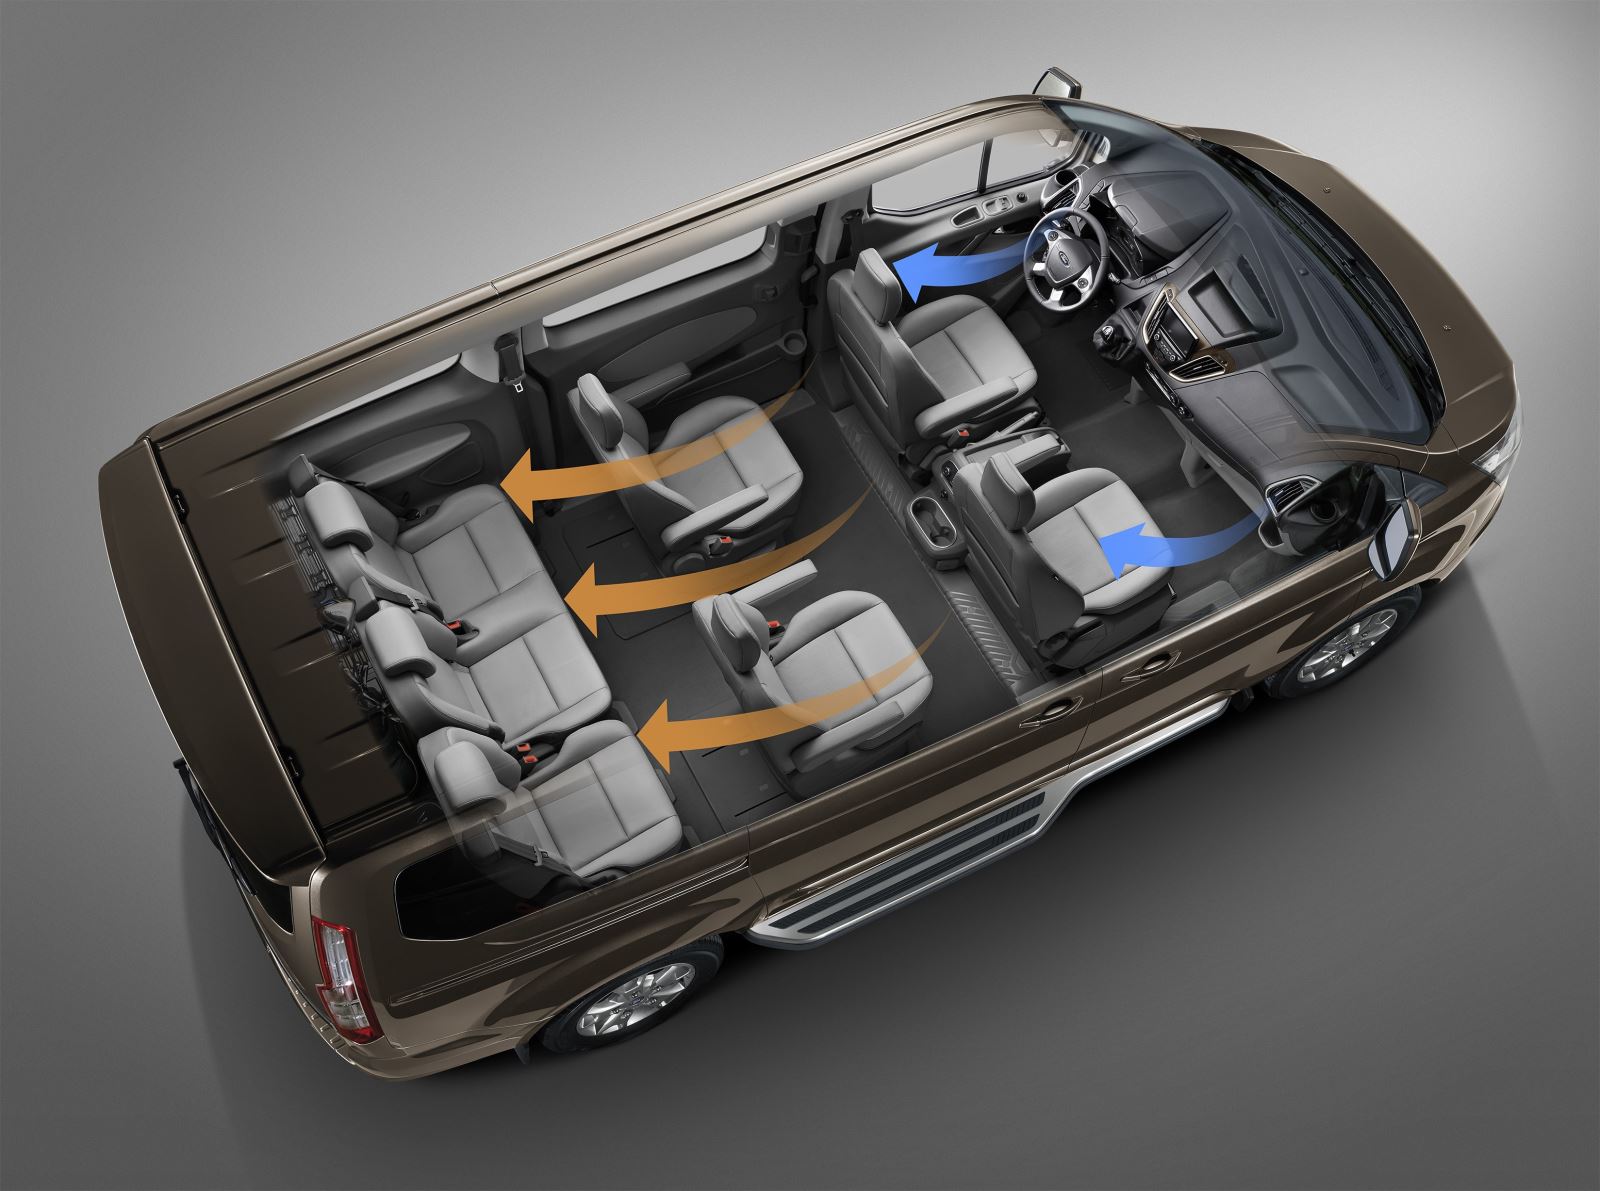 Ford ra mắt MPV 7 chỗ Tourneo giá 1 tỷ đồng